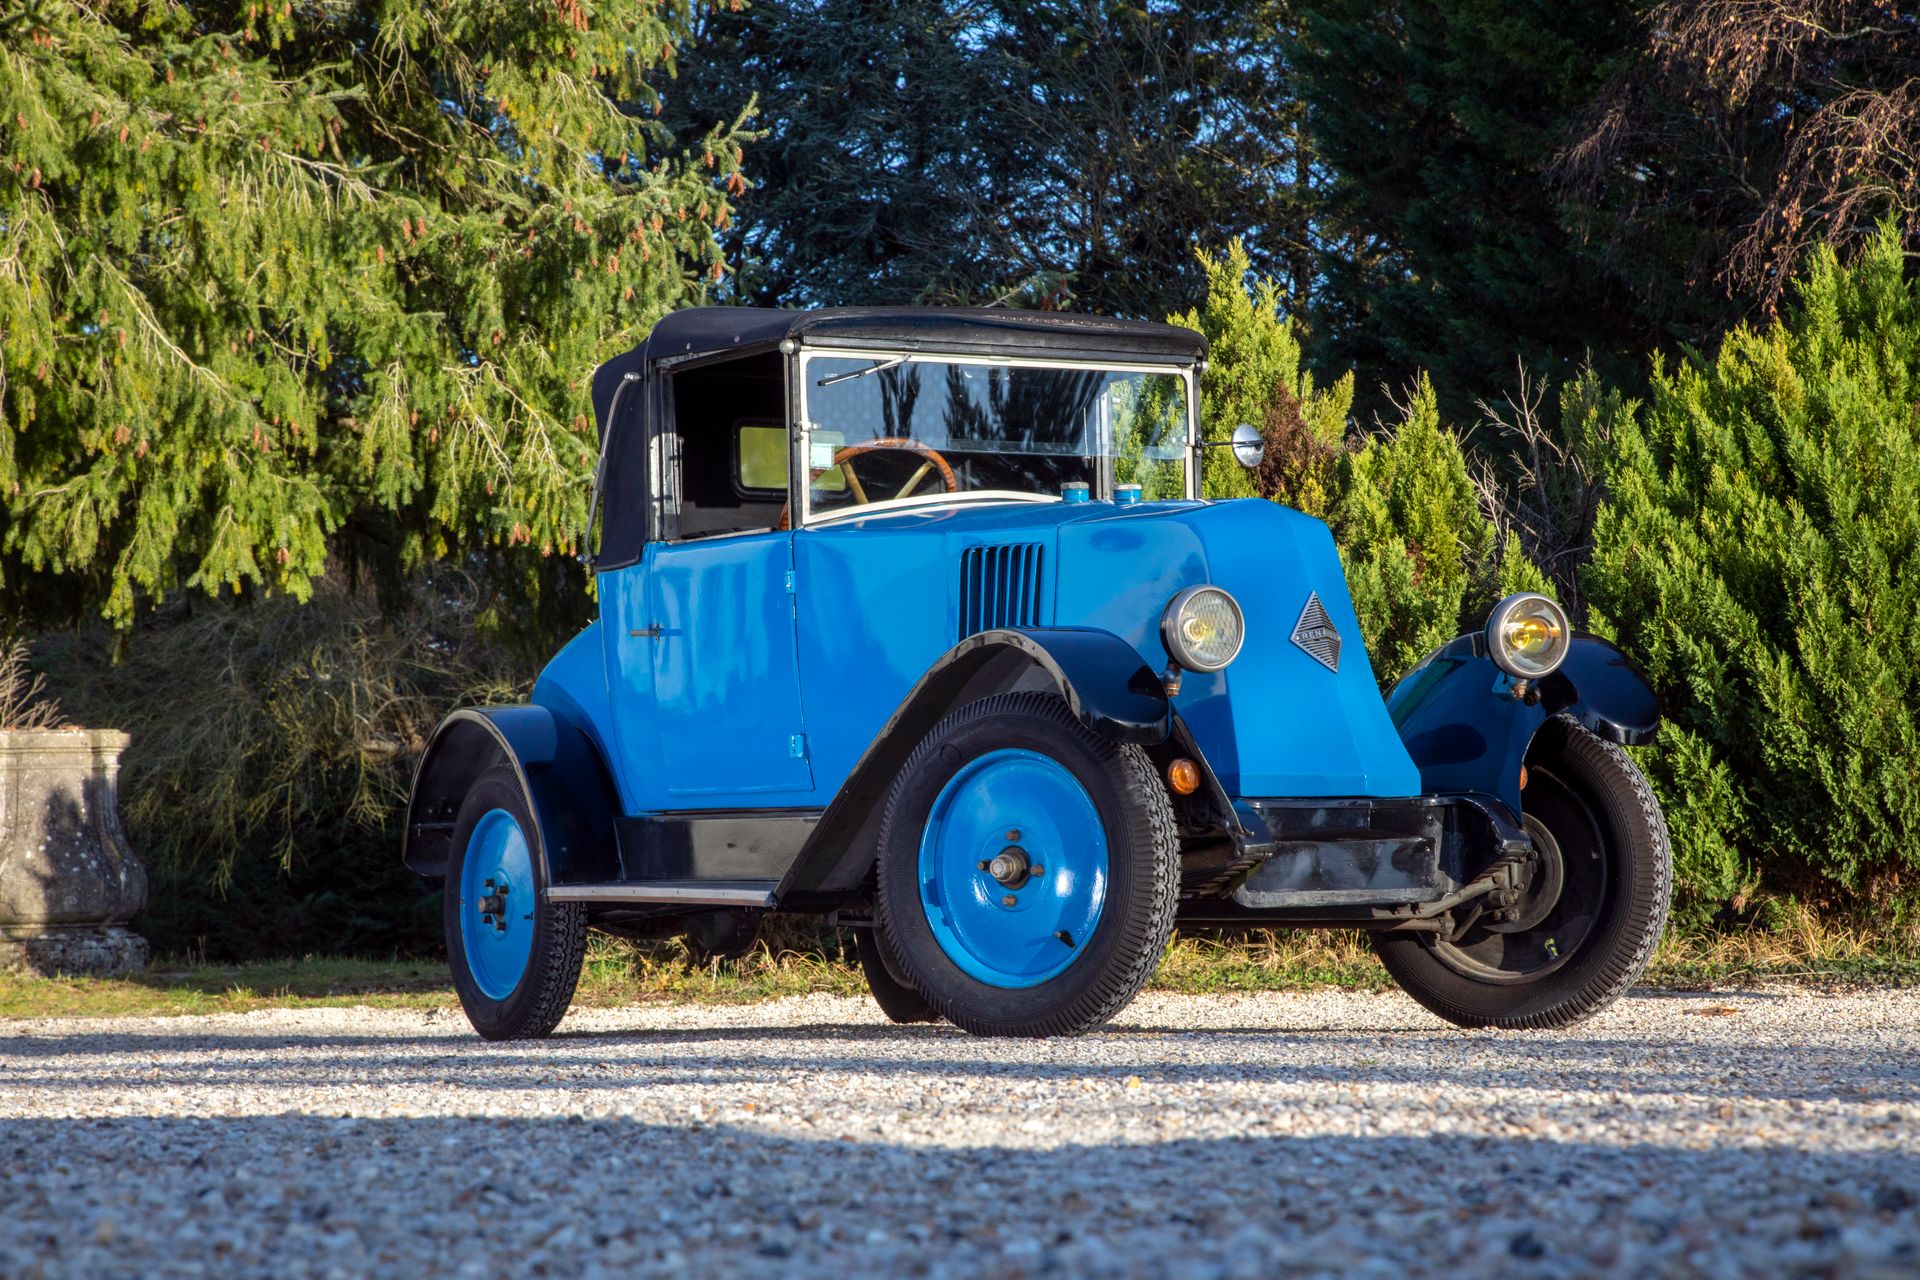 Null H先生收藏毫无保留
1925年雷诺公司
类型：NN
序列号：194301
法国注册
8 000 / 10 000 €
无底价出售

NN型车是为了对抗&hellip;